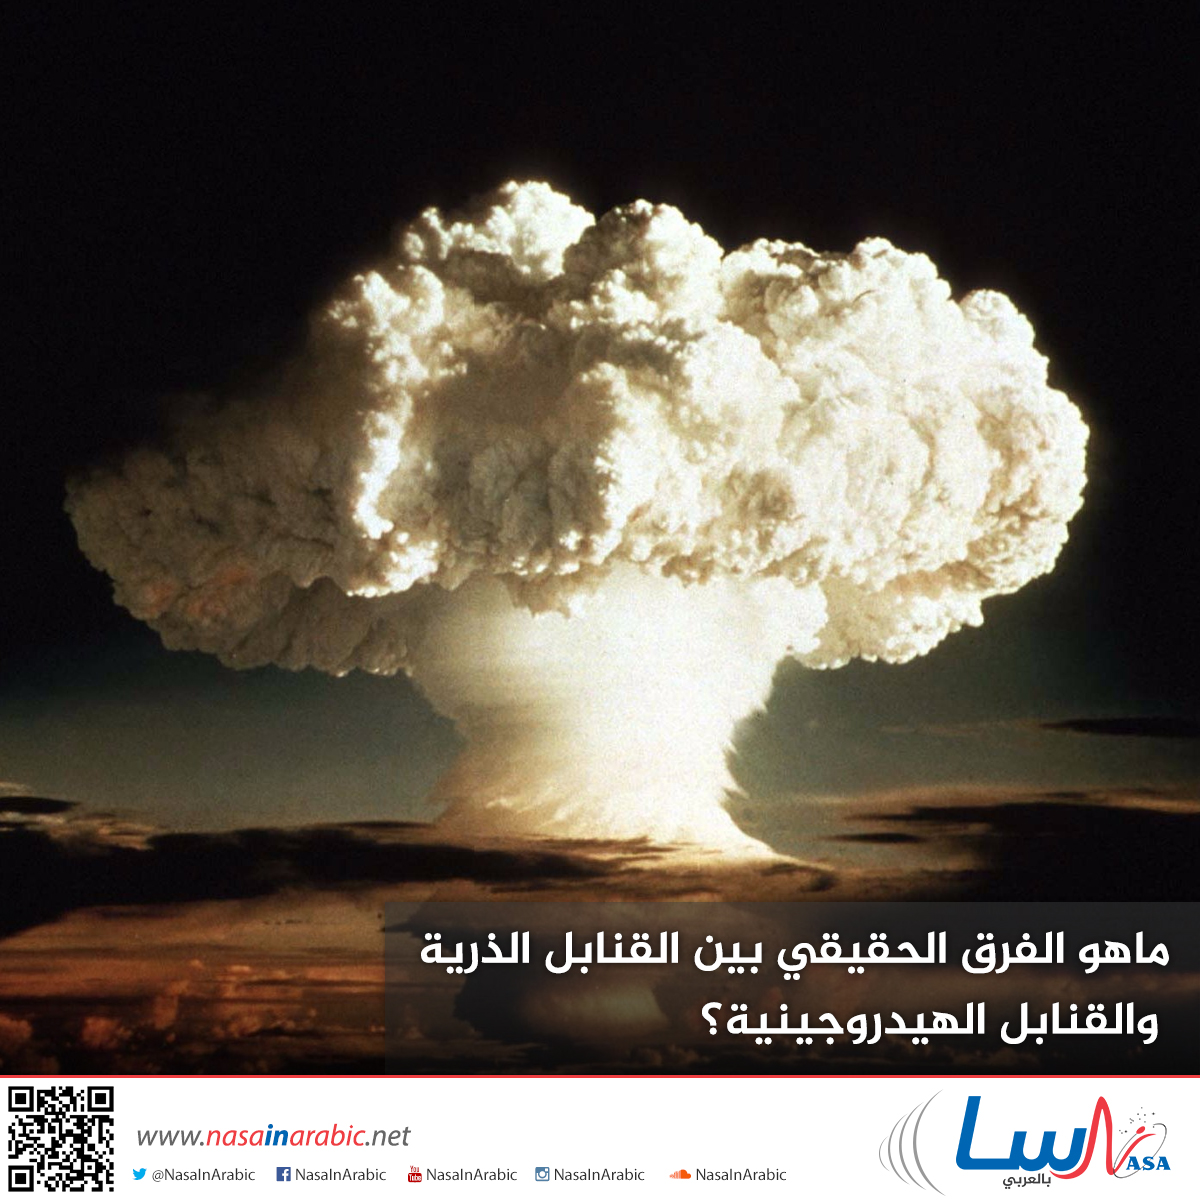 ماهو الفرق الحقيقي بين القنابل الذرية والقنابل الهيدروجينية؟